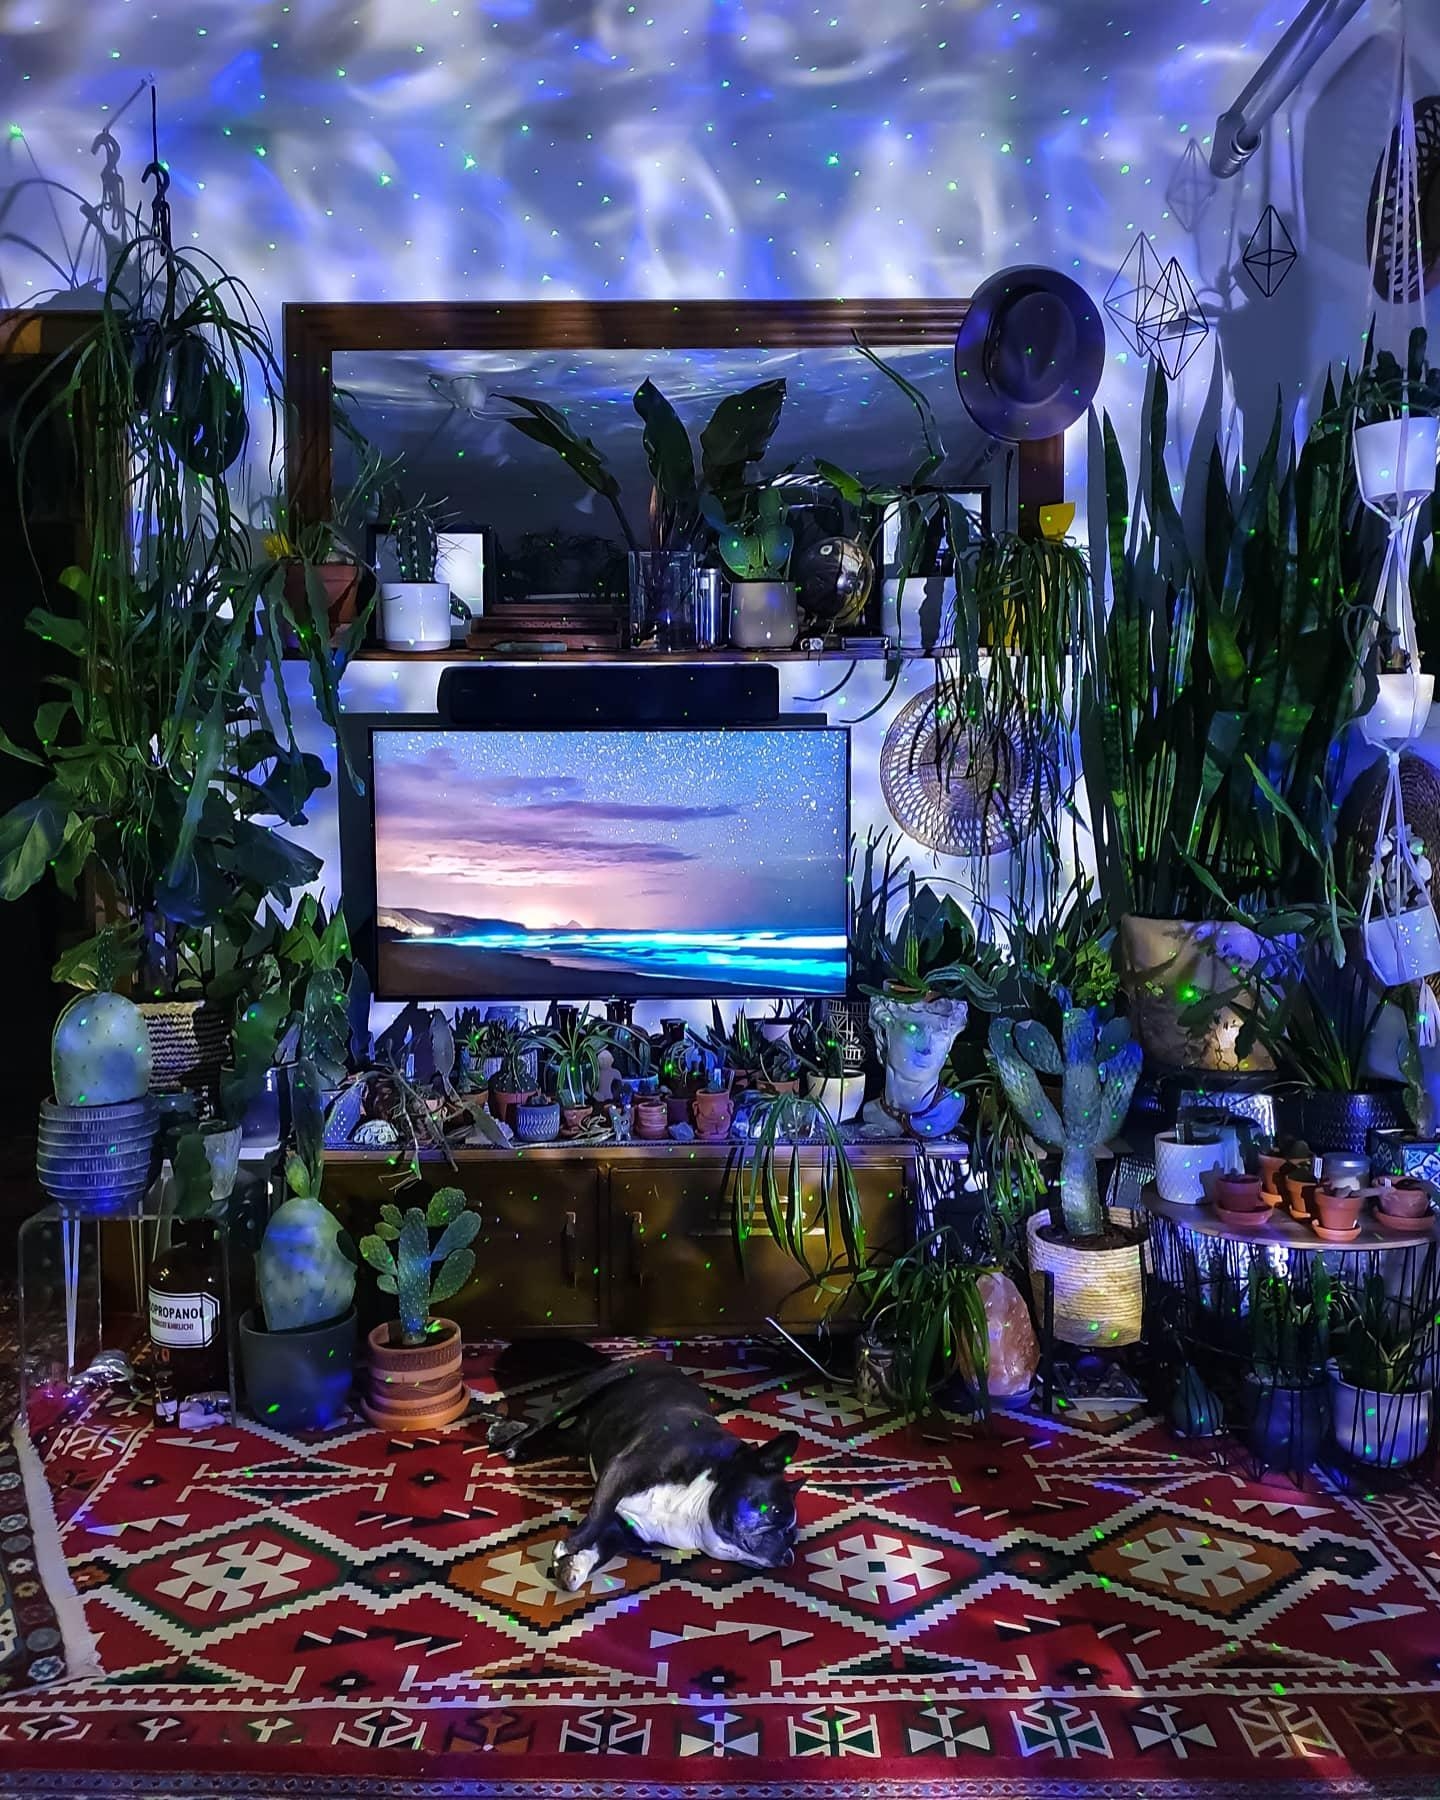 DREAMS #wohnzimmer #Pflanzen #galaxie #boho #hippie #kommode #sideboard #kaktus